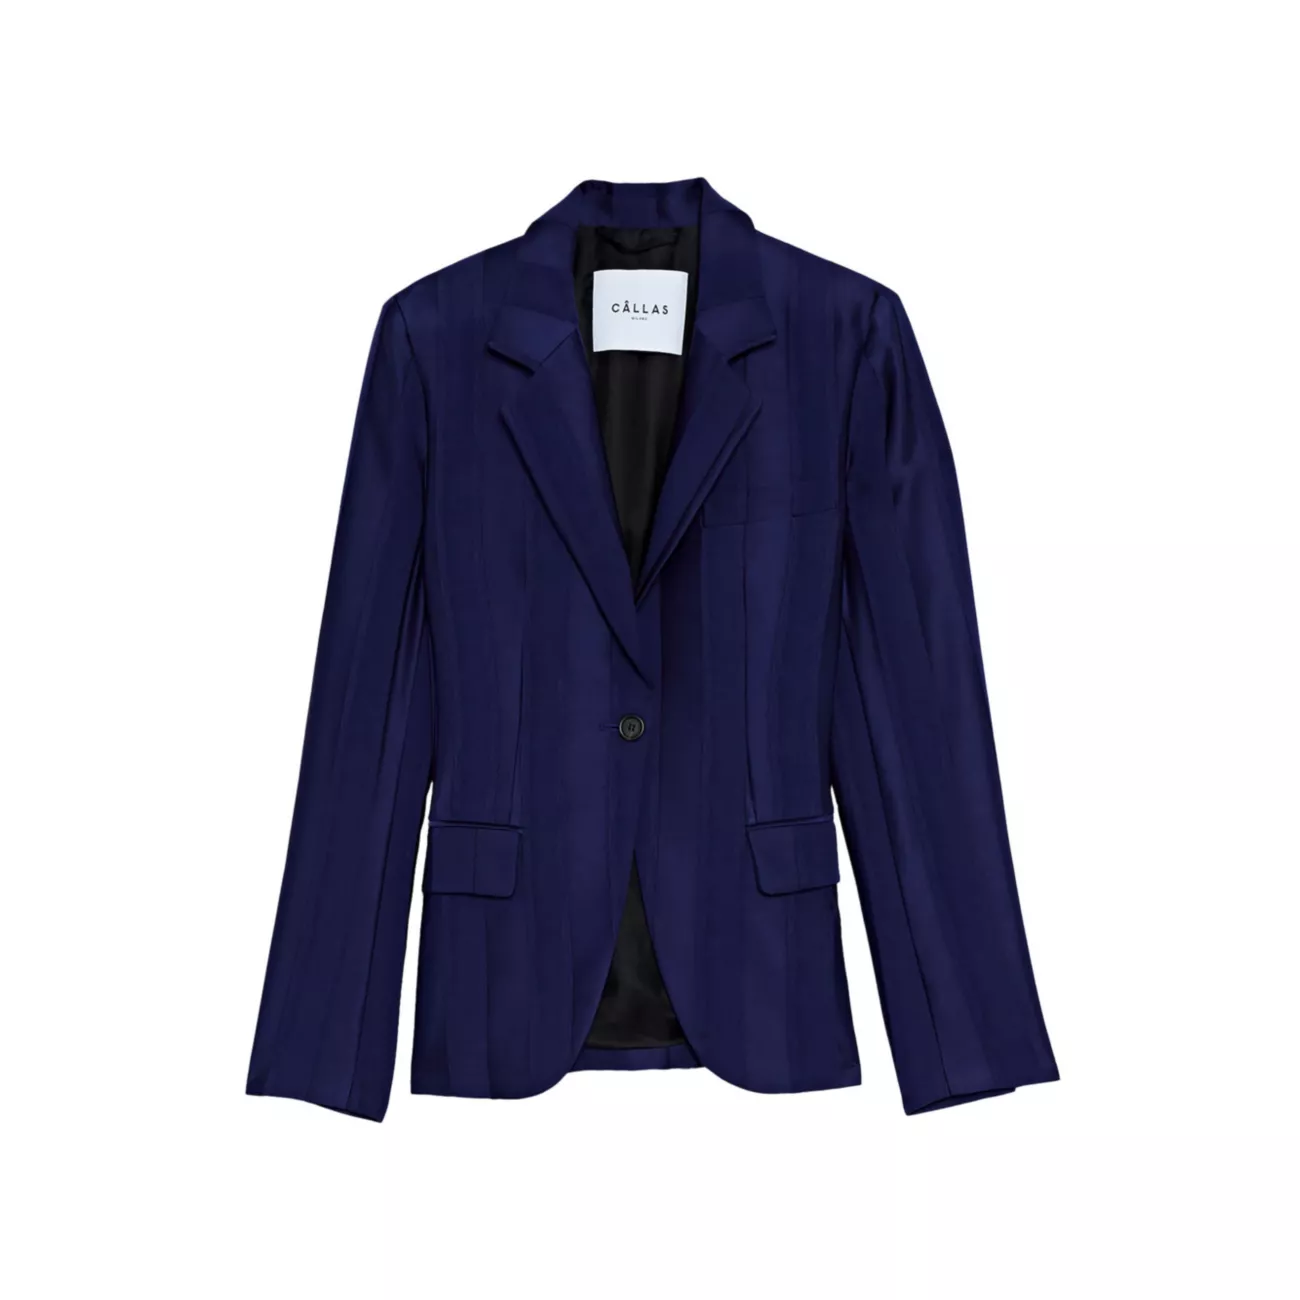 Классический пиджак в полоску на одной пуговице James Callas Milano